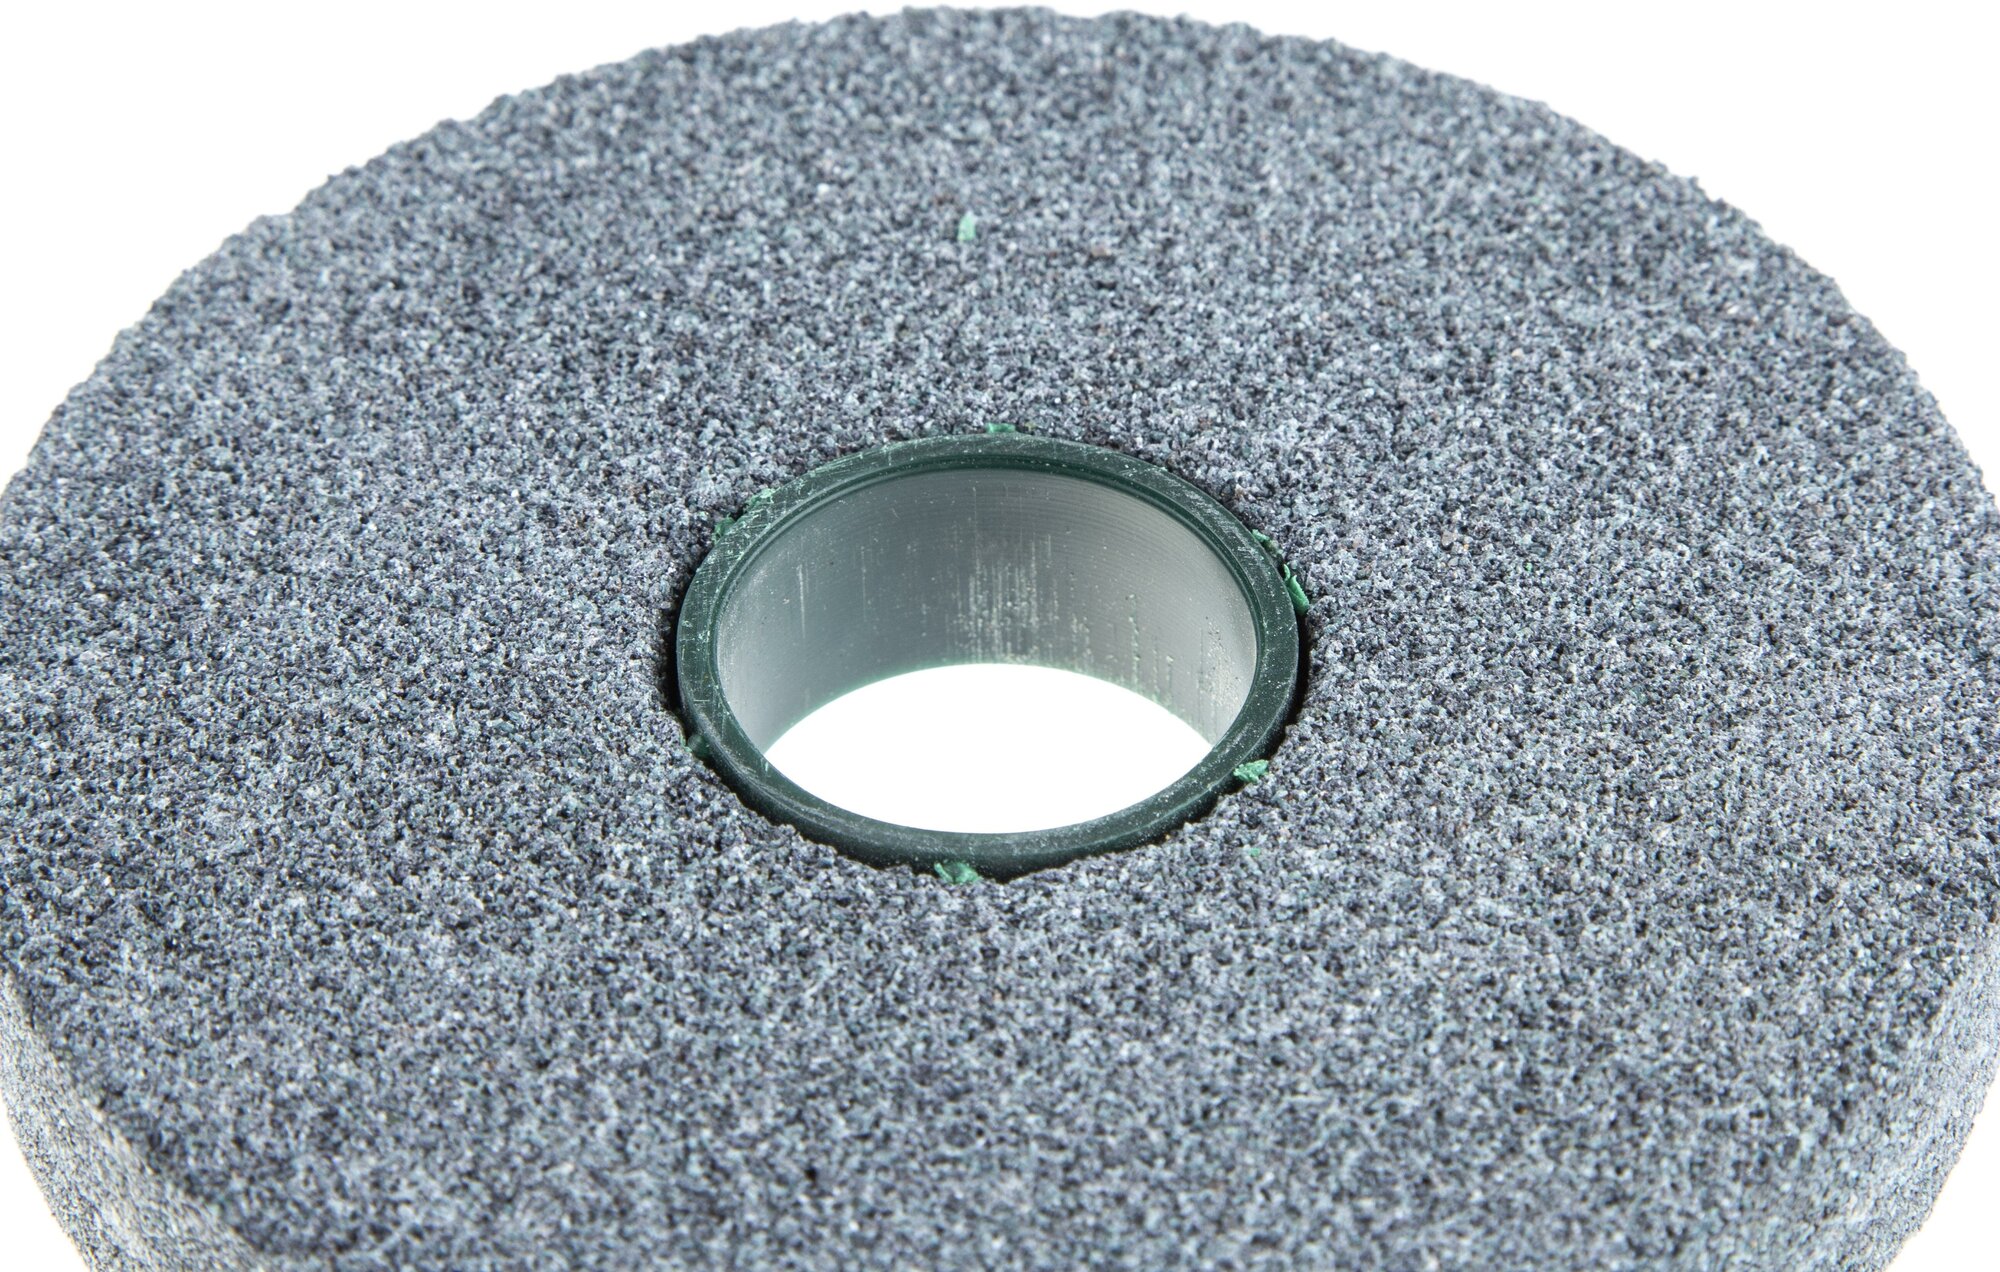 Круг шлифовально-точильный LugaAbrasiv, диаметр 125 мм, 20 мм, посадочный диаметр 32 мм, 63, зеленый, 40 К, L 35 м/с V